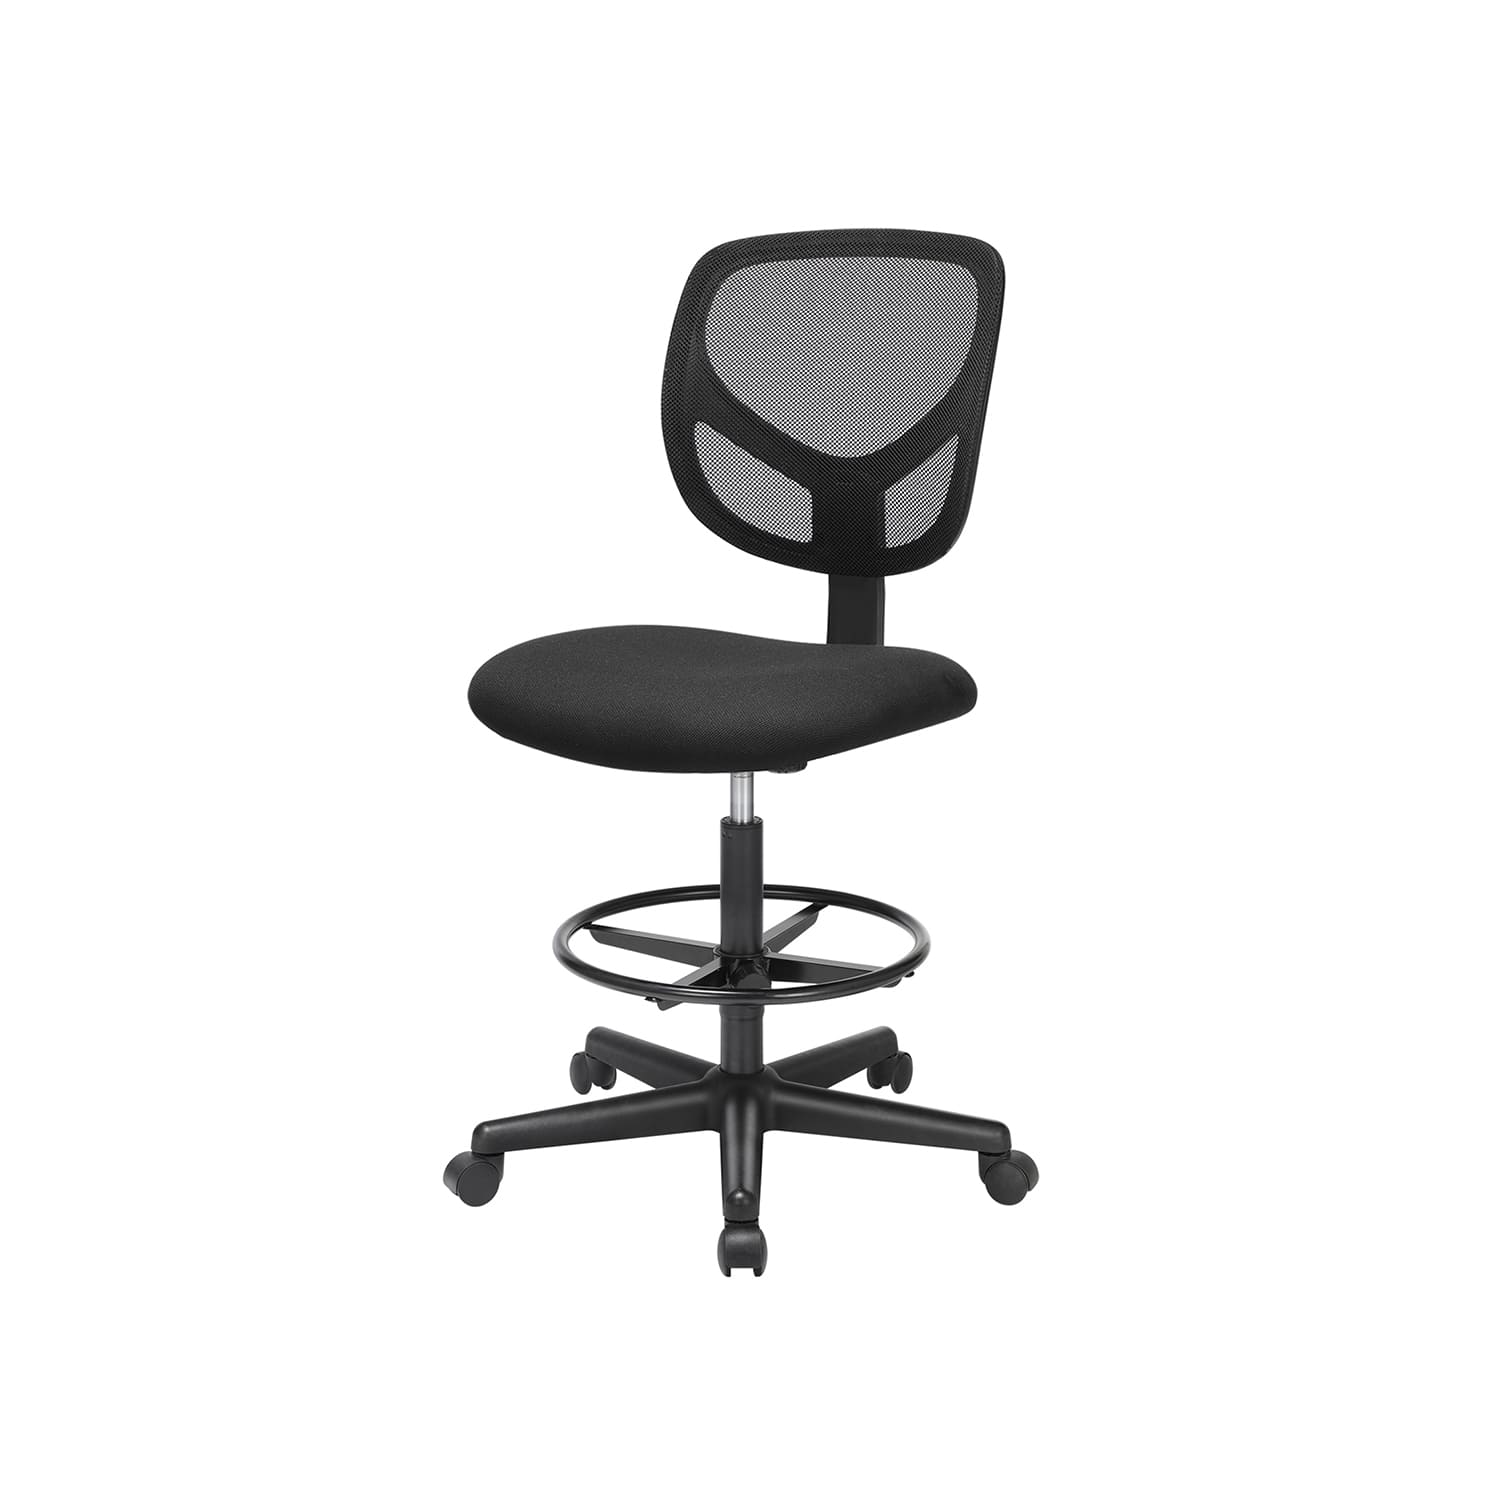  Bürostuhl, Ergonomischer Arbeitshocker, Sitzhöhe 51,5-71,5 cm